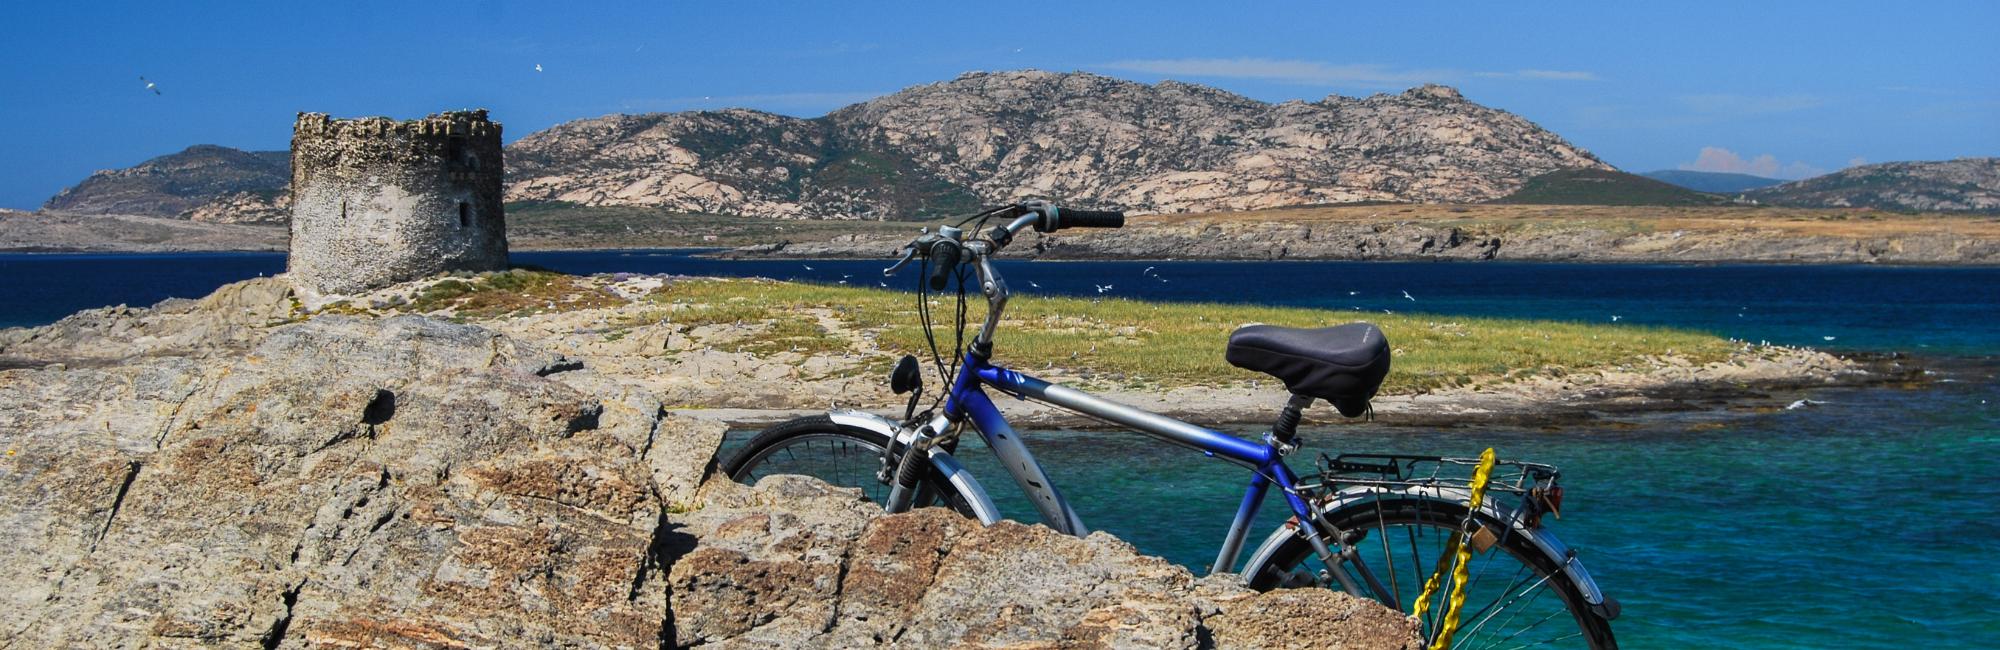 Coastal cycling in Italy